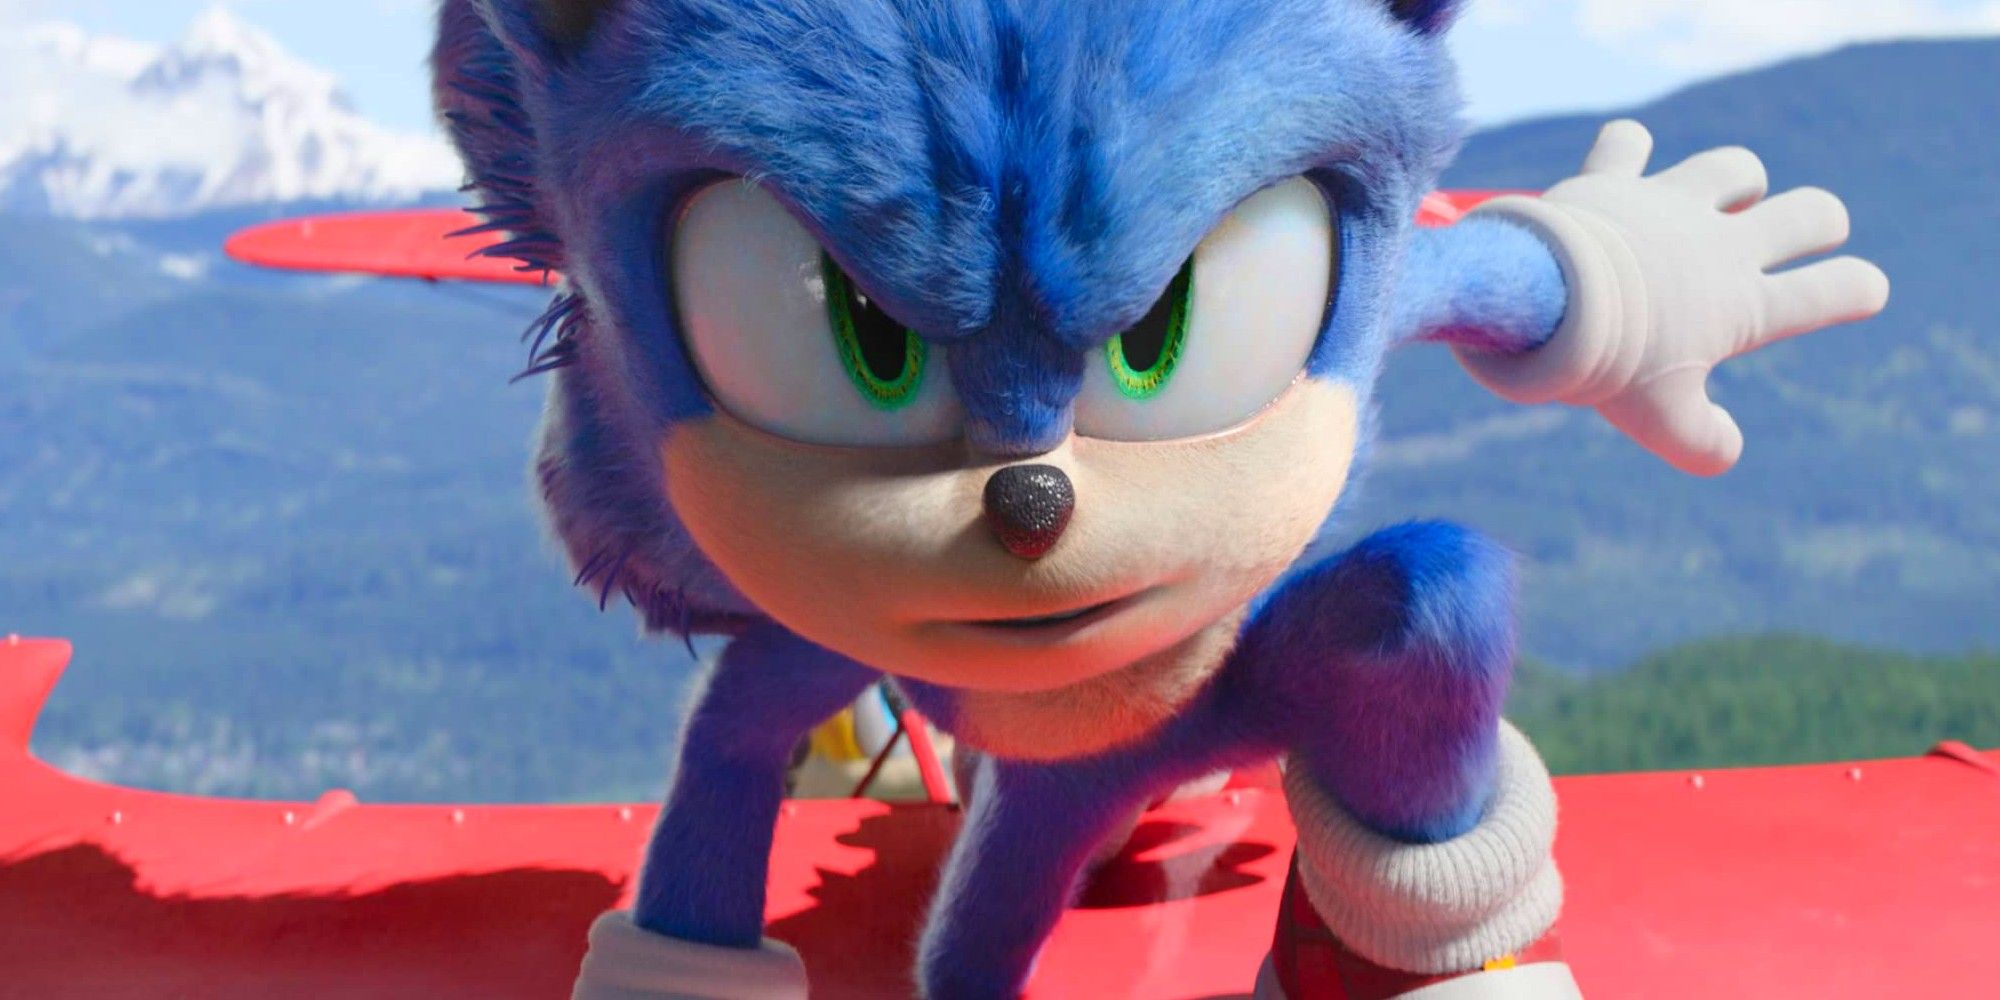 Voice of Ben Schwartz in Sonic the Hedgehog 2